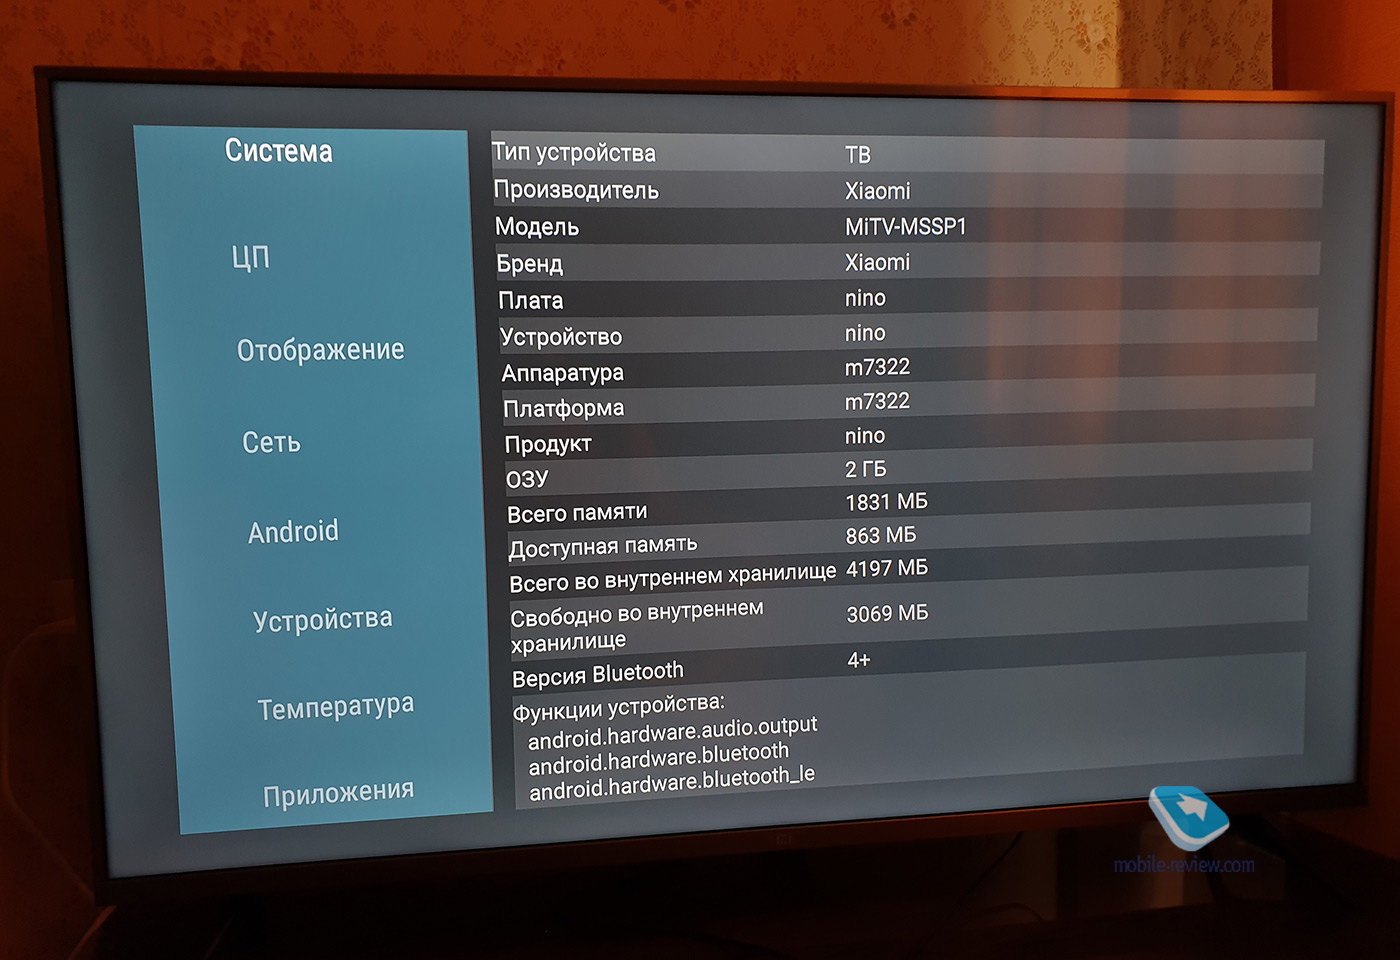 Чем хороши телевизоры Xiaomi 2020 года: важные детали про Mi TV 4S 50 дюймов